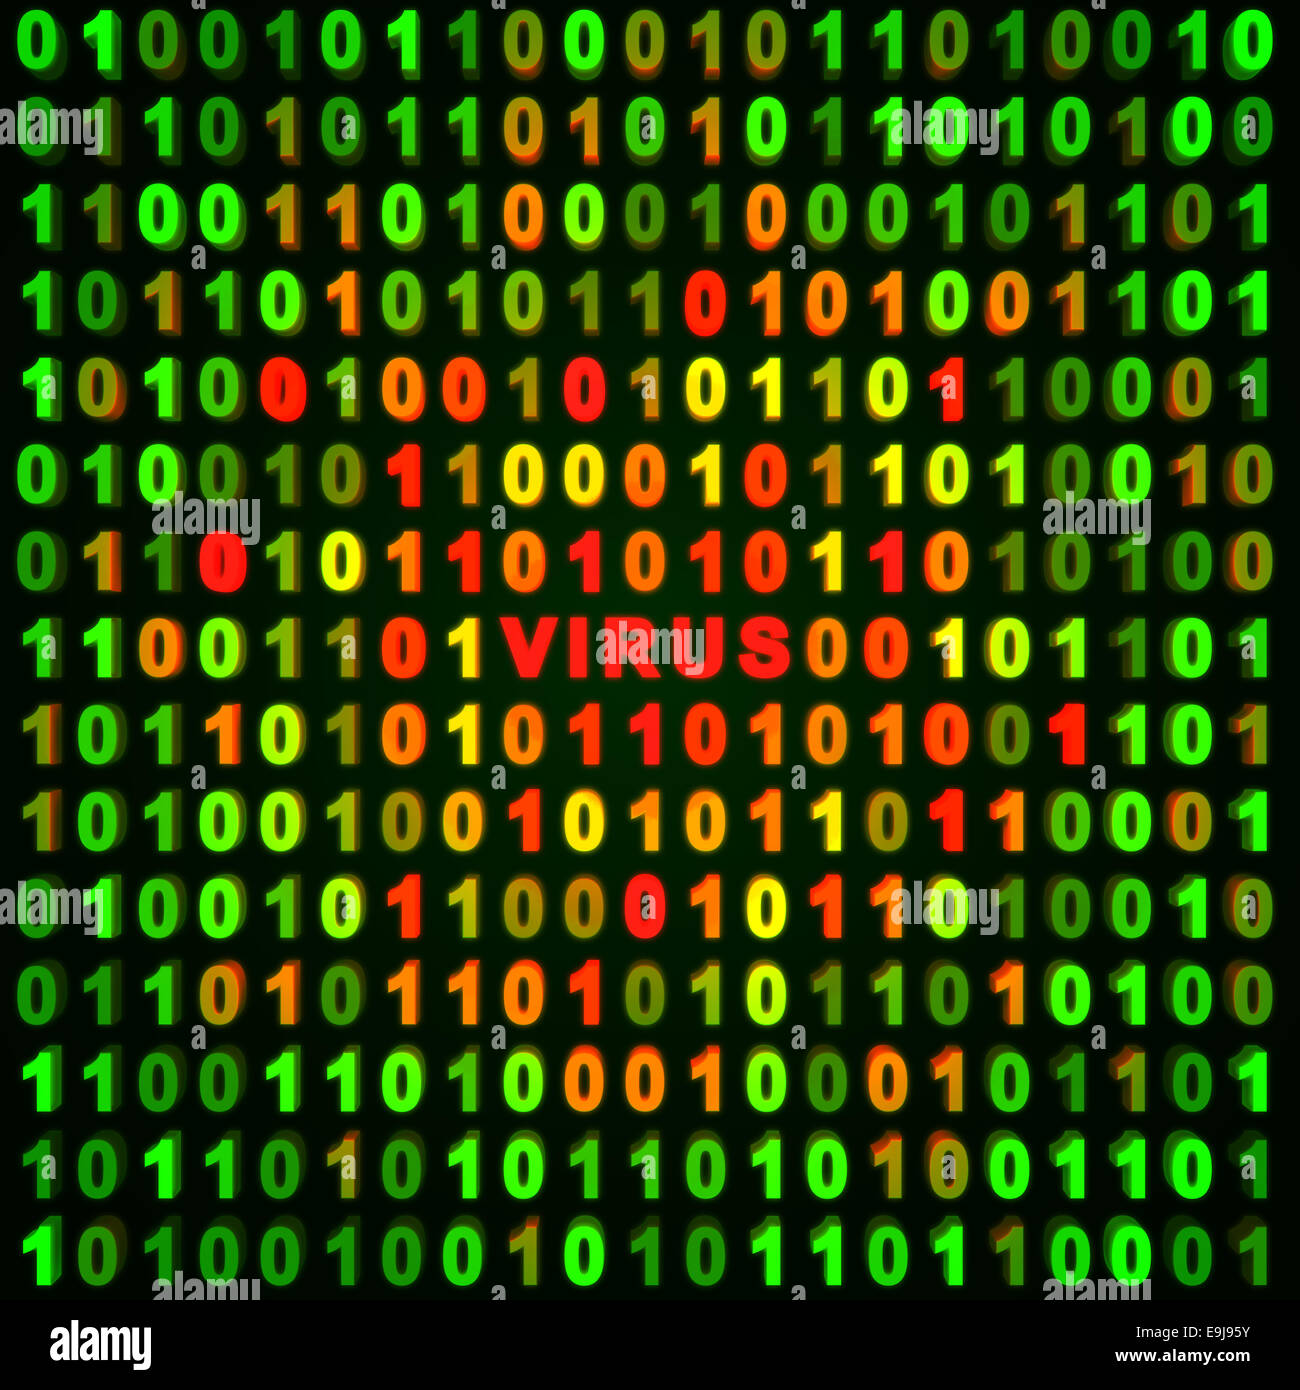 Zusammenfassung Hintergrund Computer - Virus Stockfotografie - Alamy